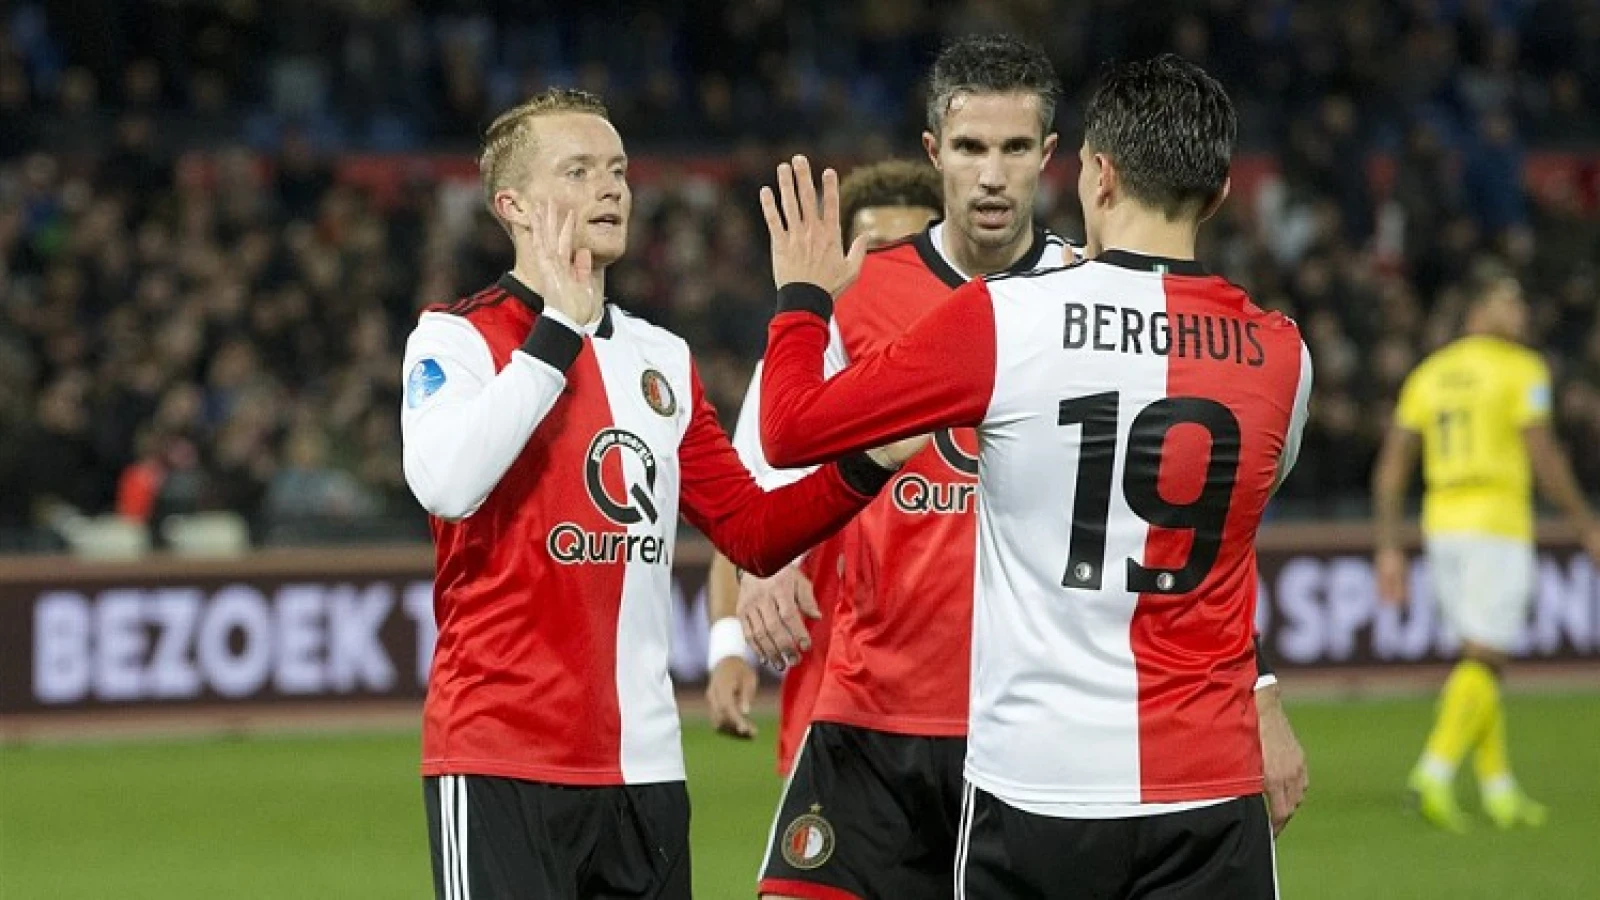 Kaalslag Eredivisie: 'Van Persie, Van Bronckhorst en mogelijk Berghuis'